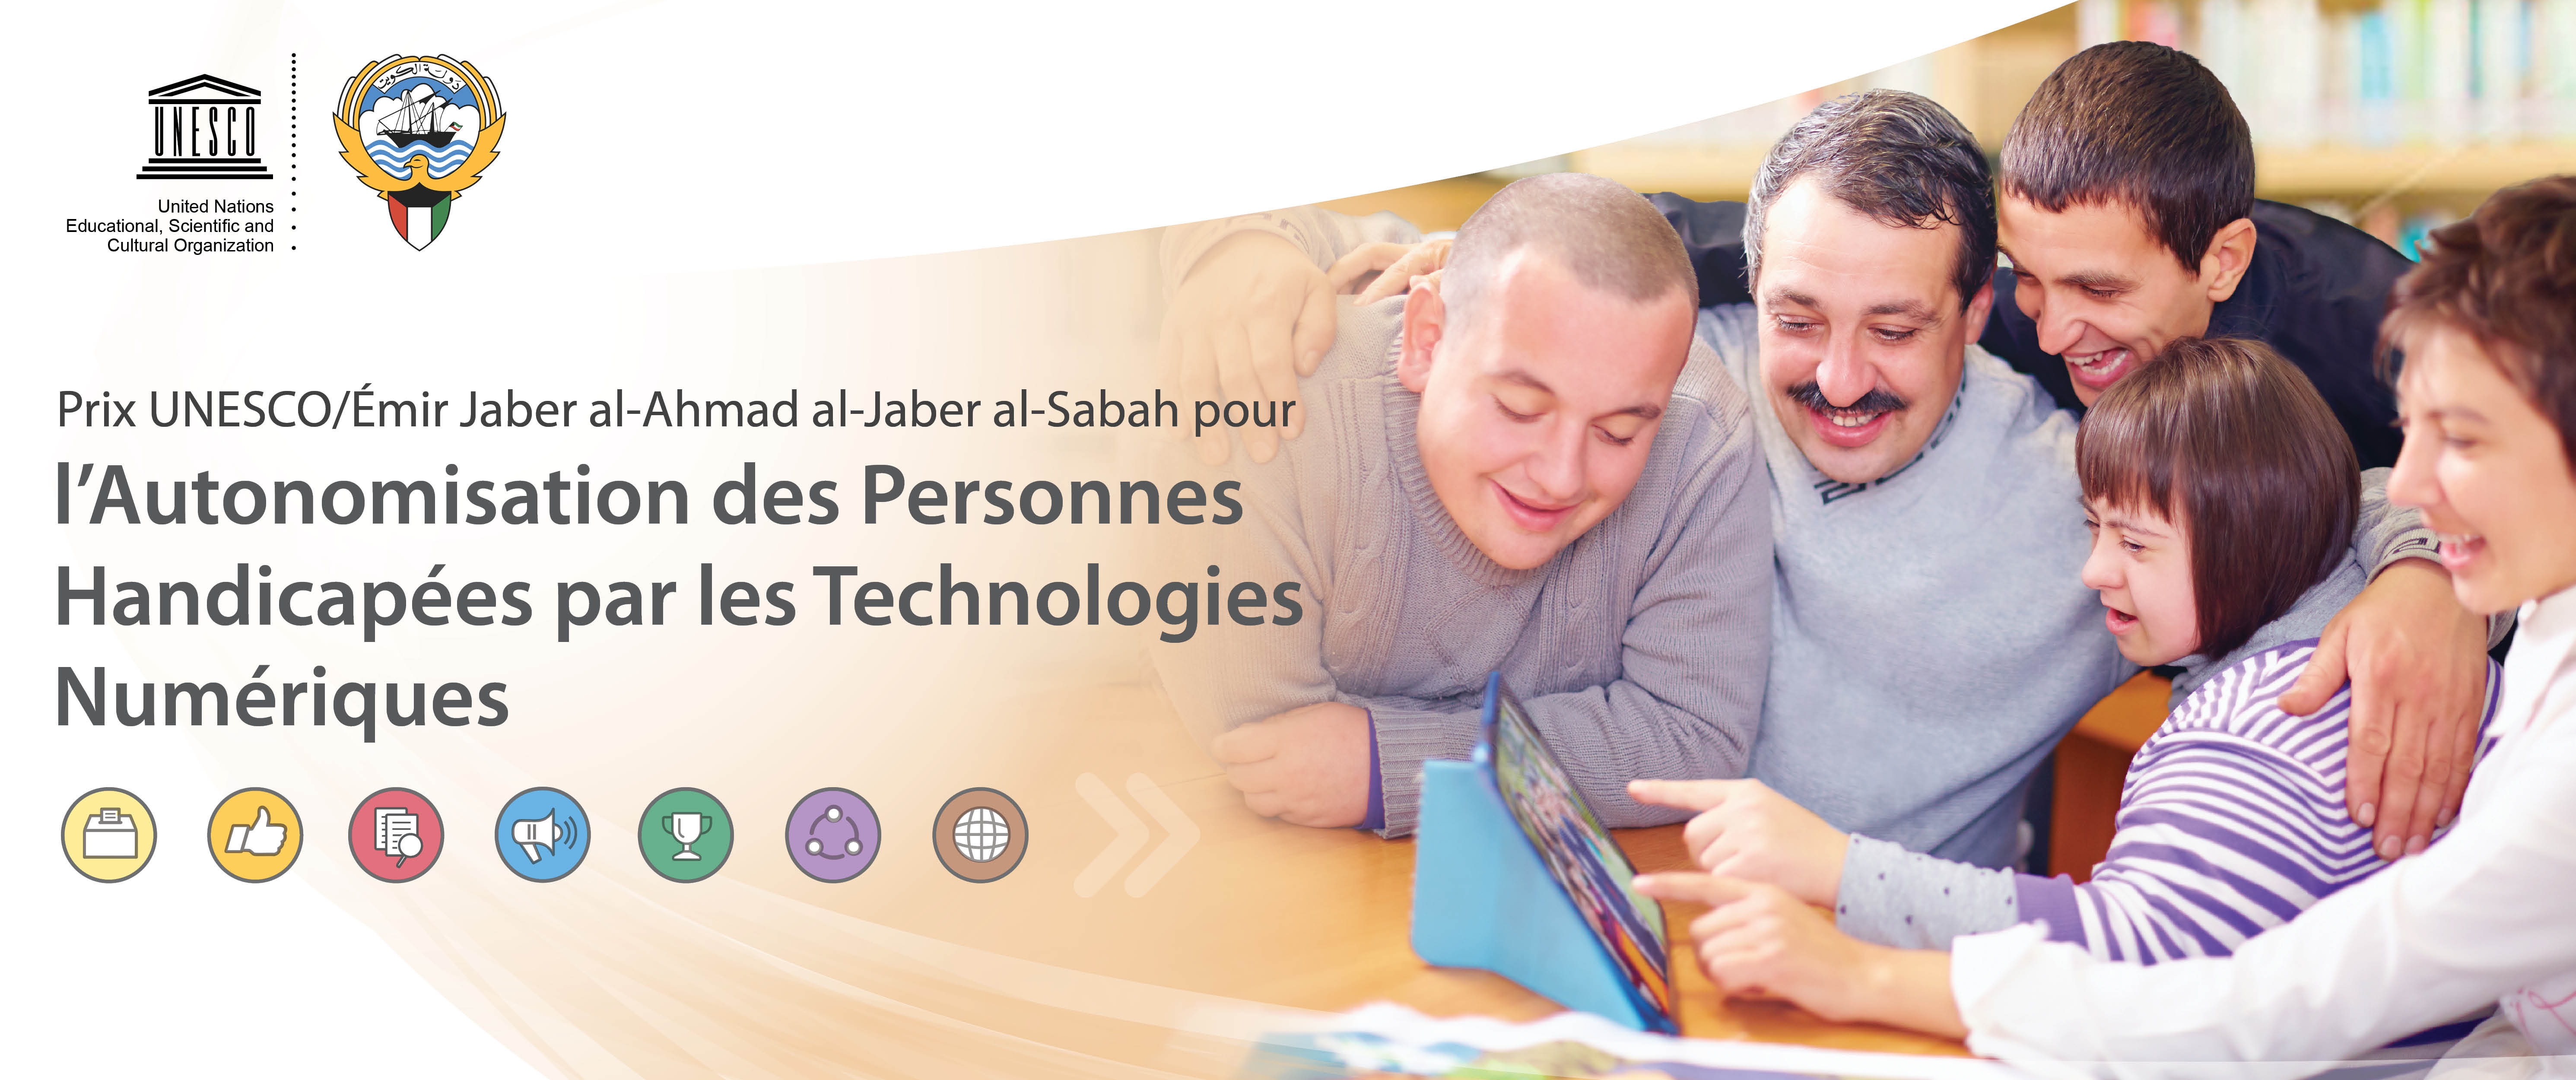 Prix UNESCO/Emir Jaber al-Ahmad al-Jaber al-Sabah pour l’autonomisation des personnes handicapées par les technologies numériques